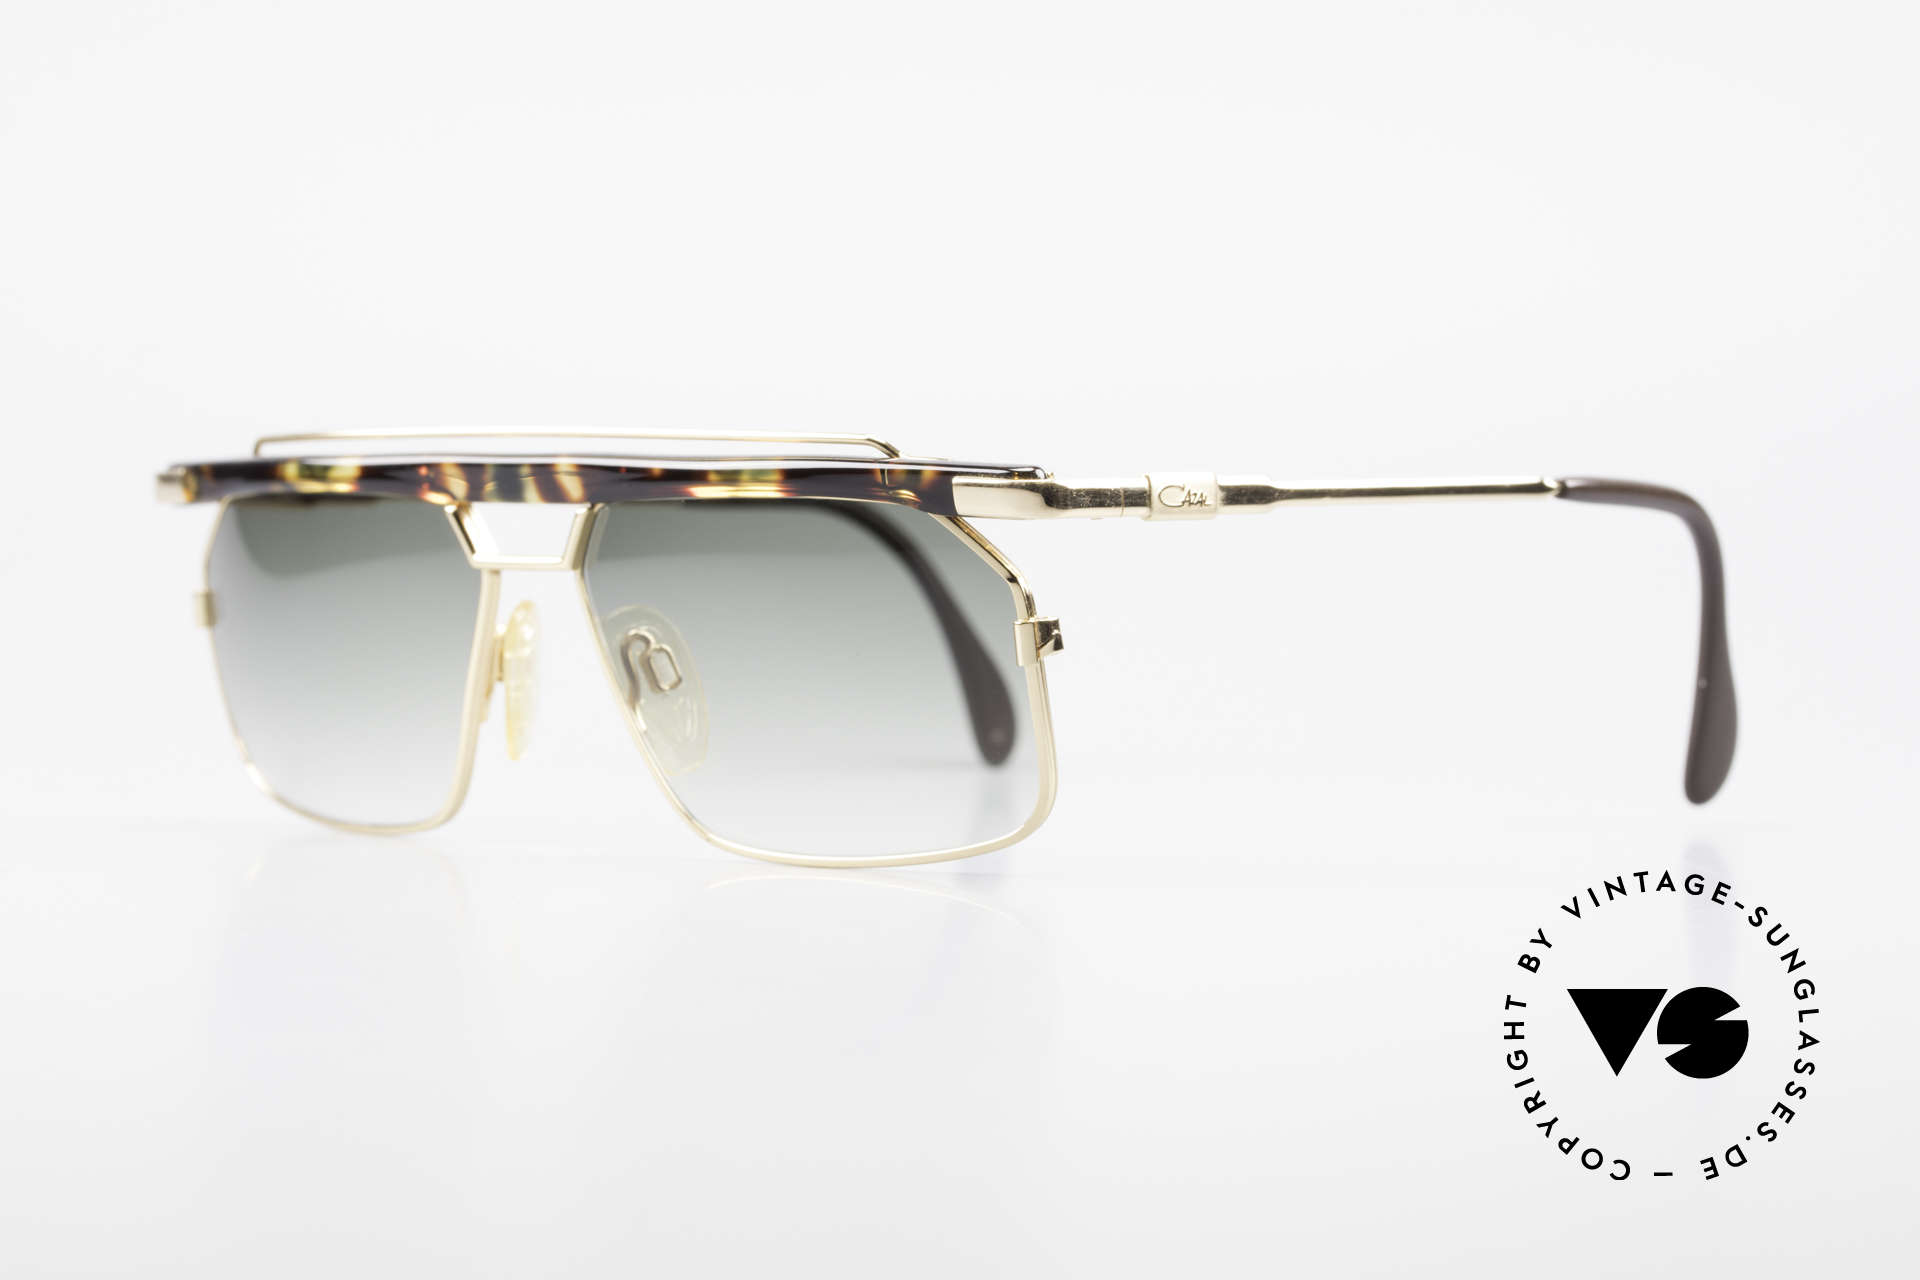 Cazal 752 90er Vintage Sonnenbrille Rar, extrem selten, da nur in kleiner Stückzahl produziert, Passend für Herren